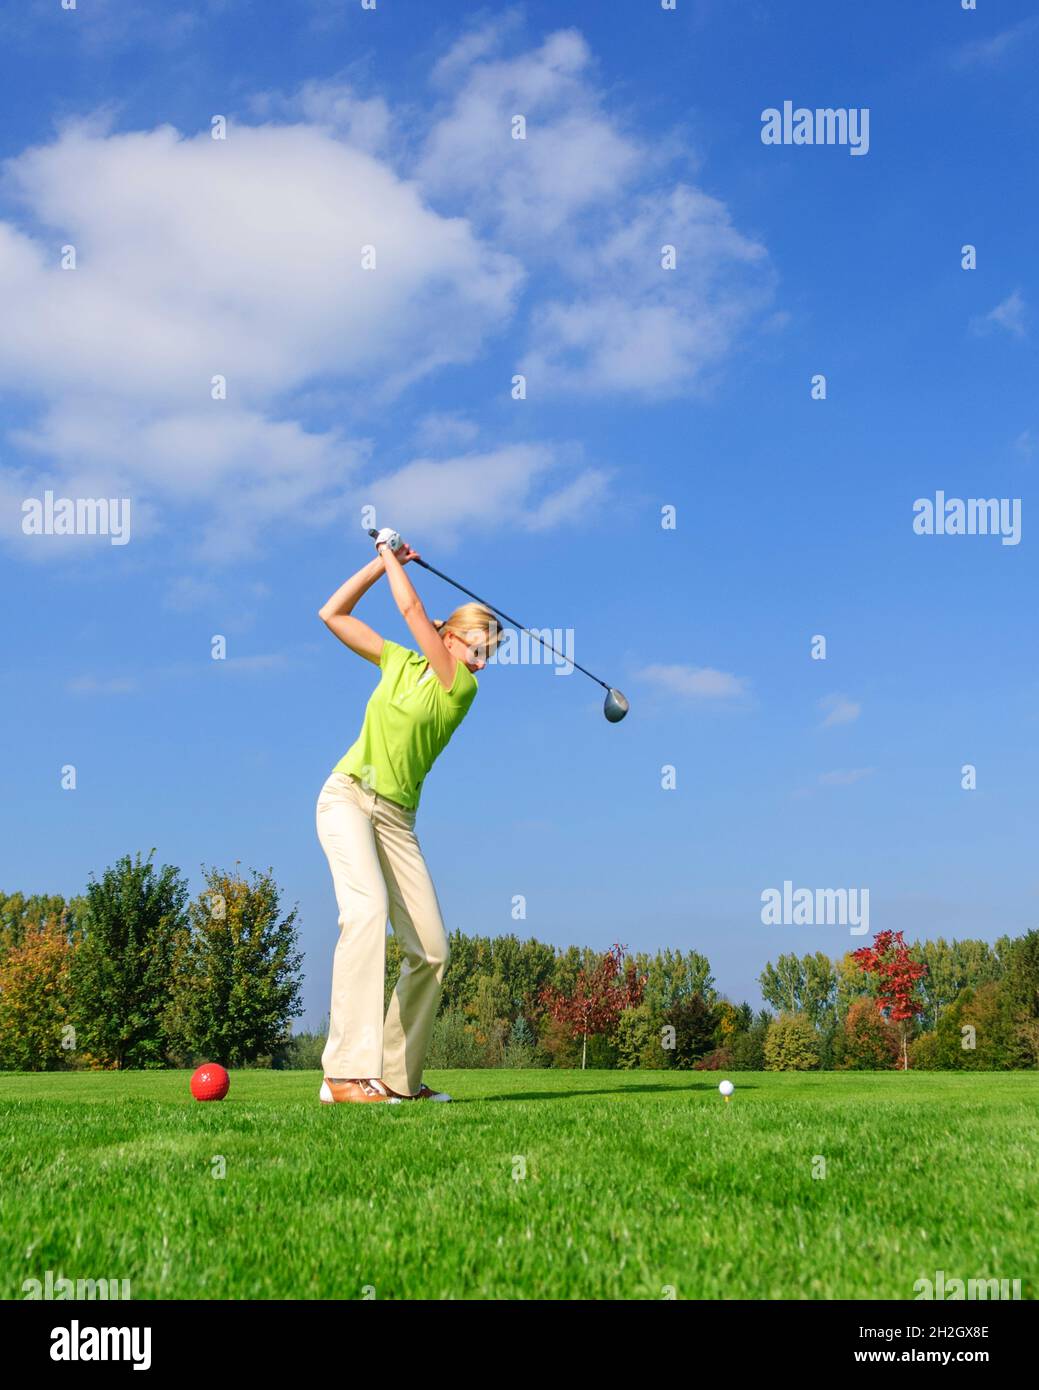 Une joueuse de golf attirante frappe le ballon du tee Banque D'Images